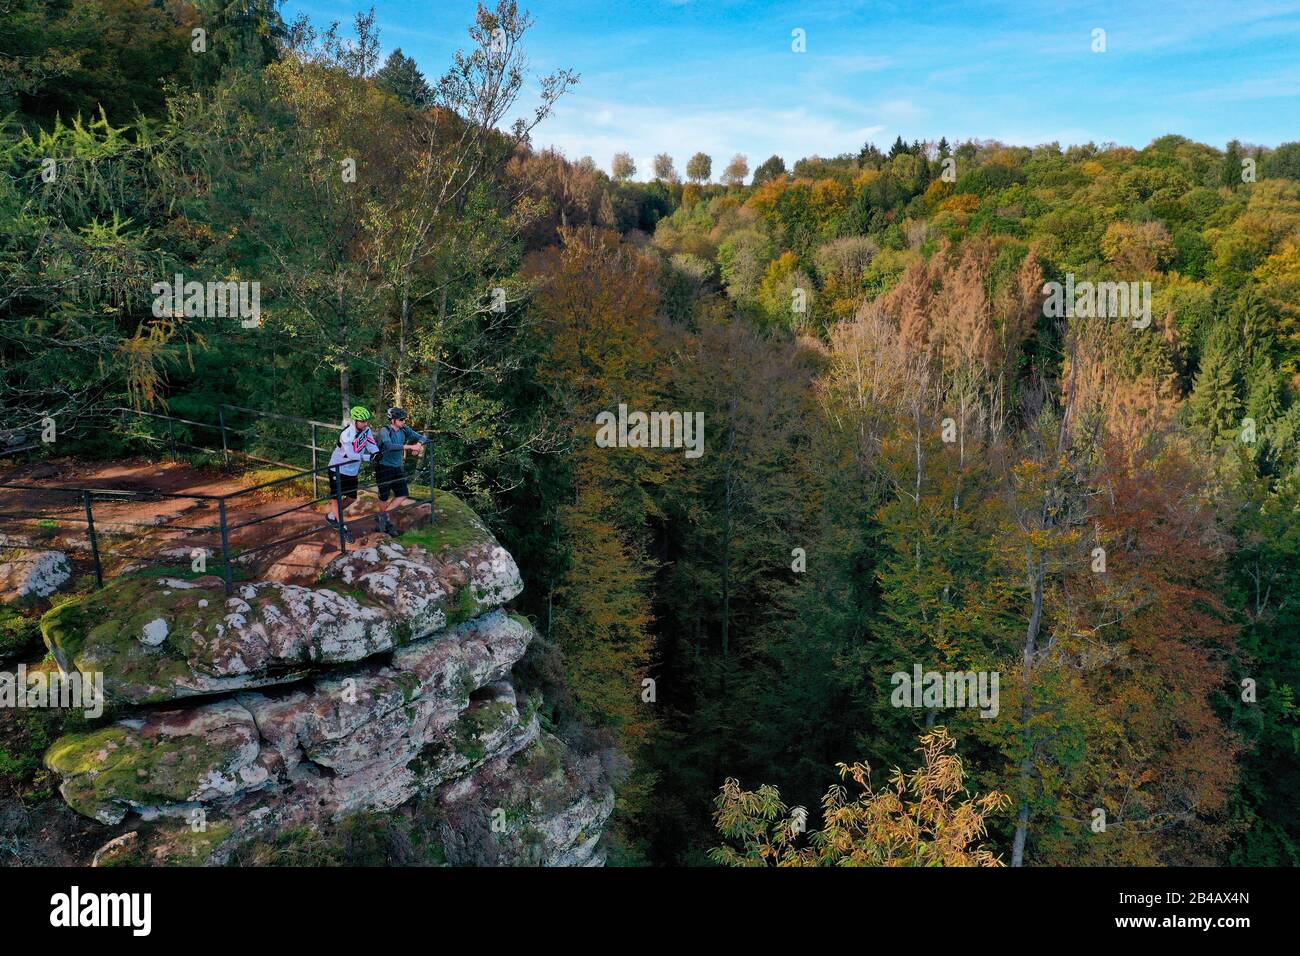 Frankreich, Bas-Rhin, Parc regionale des Vosges du nord (regionaler Naturpark der Nordvogesen), La Petite Pierre, der Rocher Blanc (Weißer Felsen), rosafarbener Sandsteinfelsen, auf den die klaren Flechten ihren Namen geben, der Trois Roches Trail (Luftaufnahme) Stockfoto